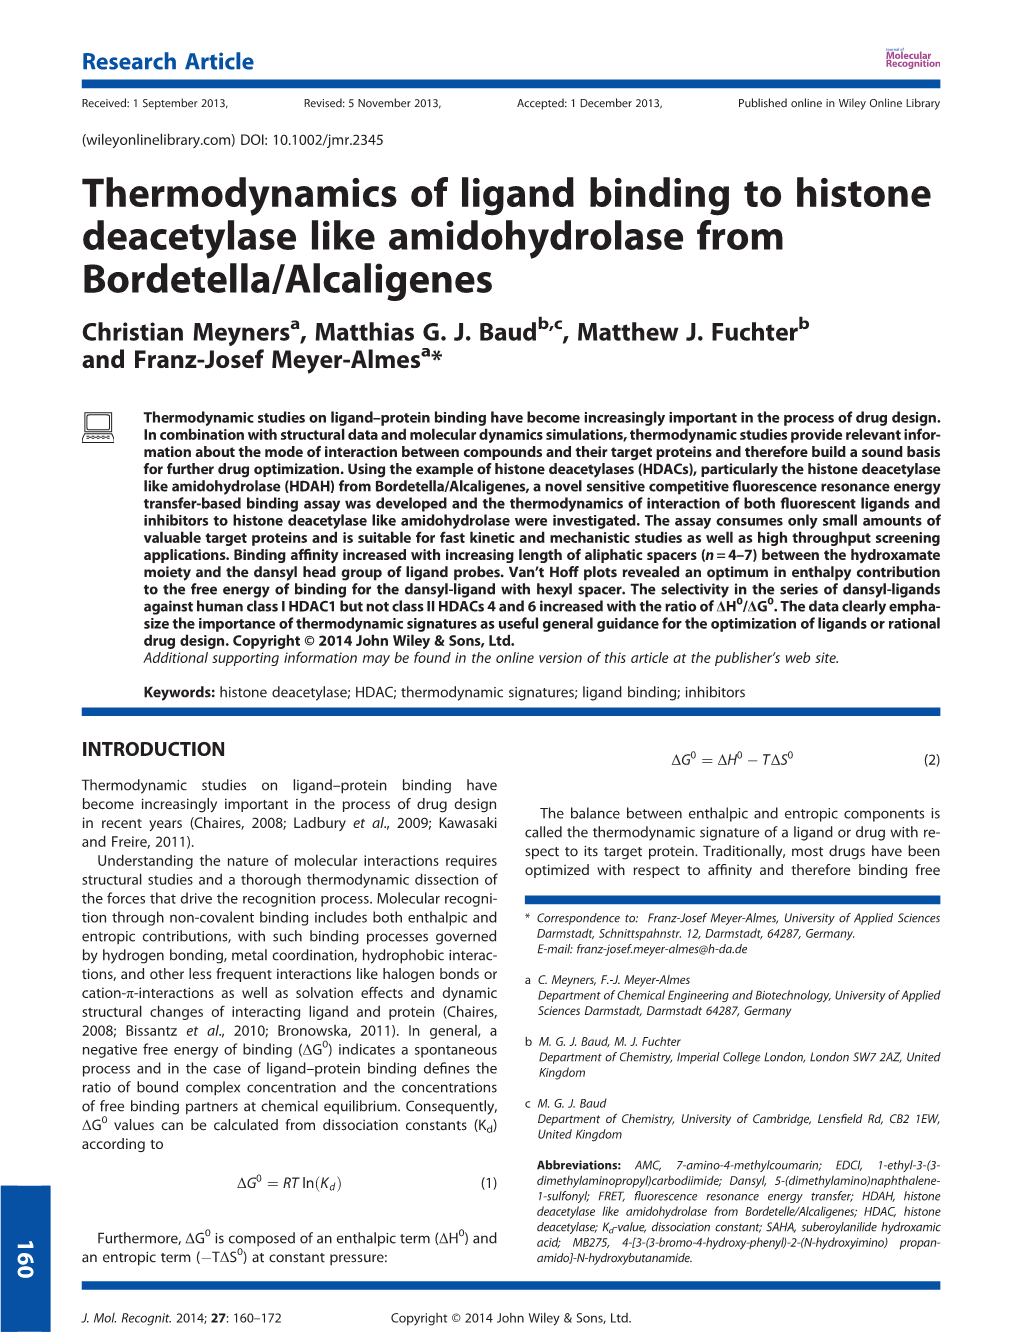 Thermodynamics of Ligand Binding to Histone Deacetylase Like Amidohydrolase from Bordetella/Alcaligenes Christian Meynersa, Matthias G